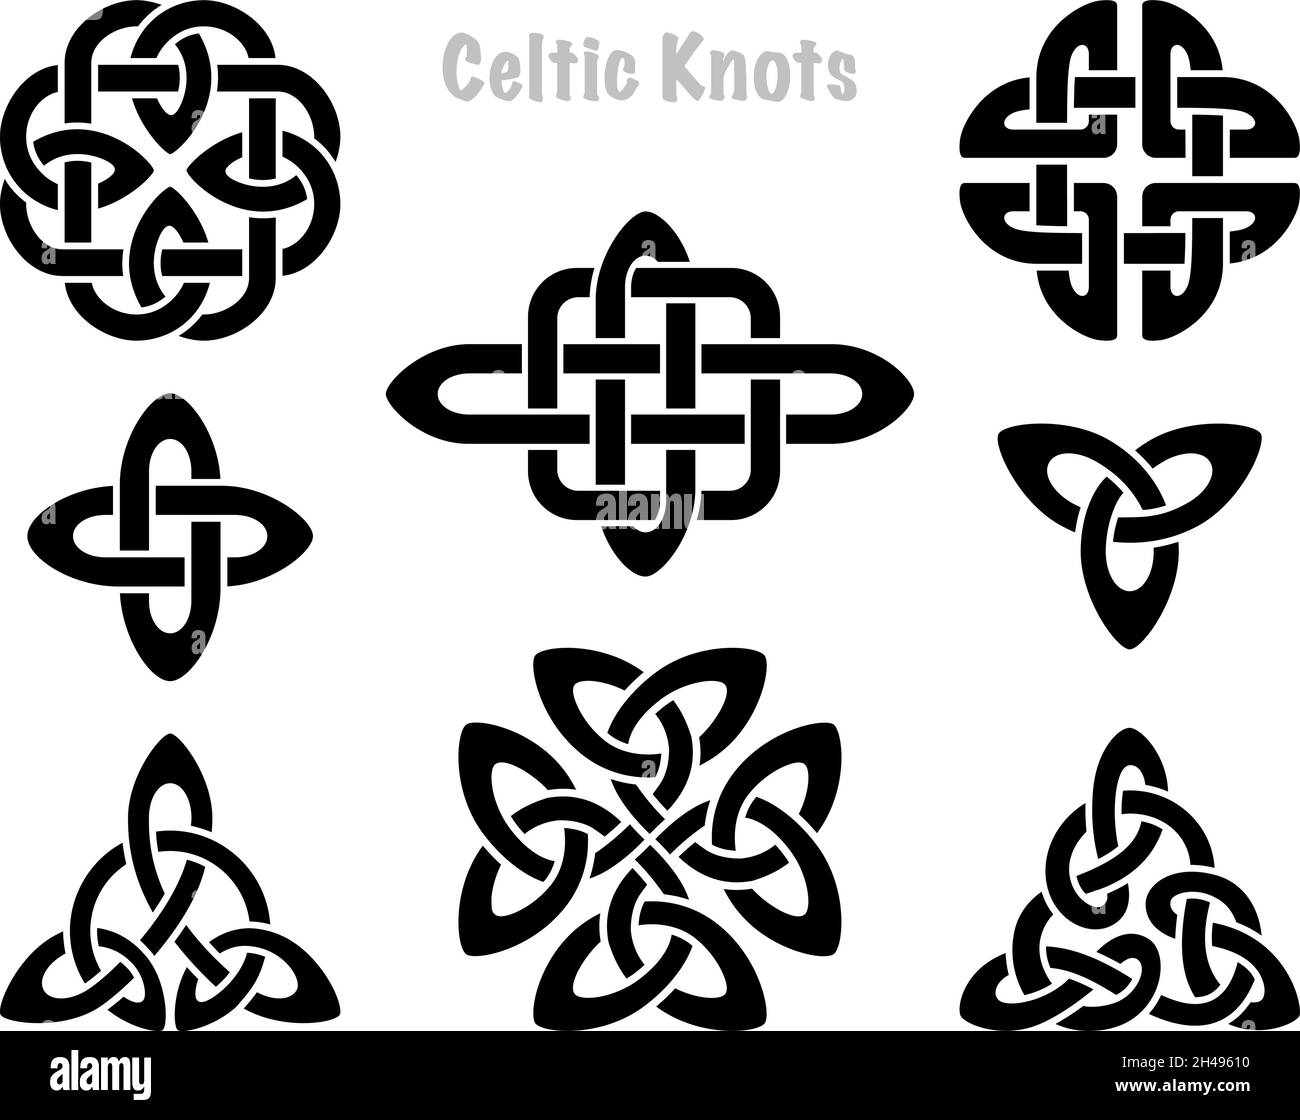 Keltische Knoten Silhouetten. Irische Knoten Symbole, Celt drei trintiy endlos verknotete Form Vektor-Symbol, unendliche Geist Einheit Symbol, heidnischen Stammes Symbolik Grafiken isoliert auf weiß Stock Vektor